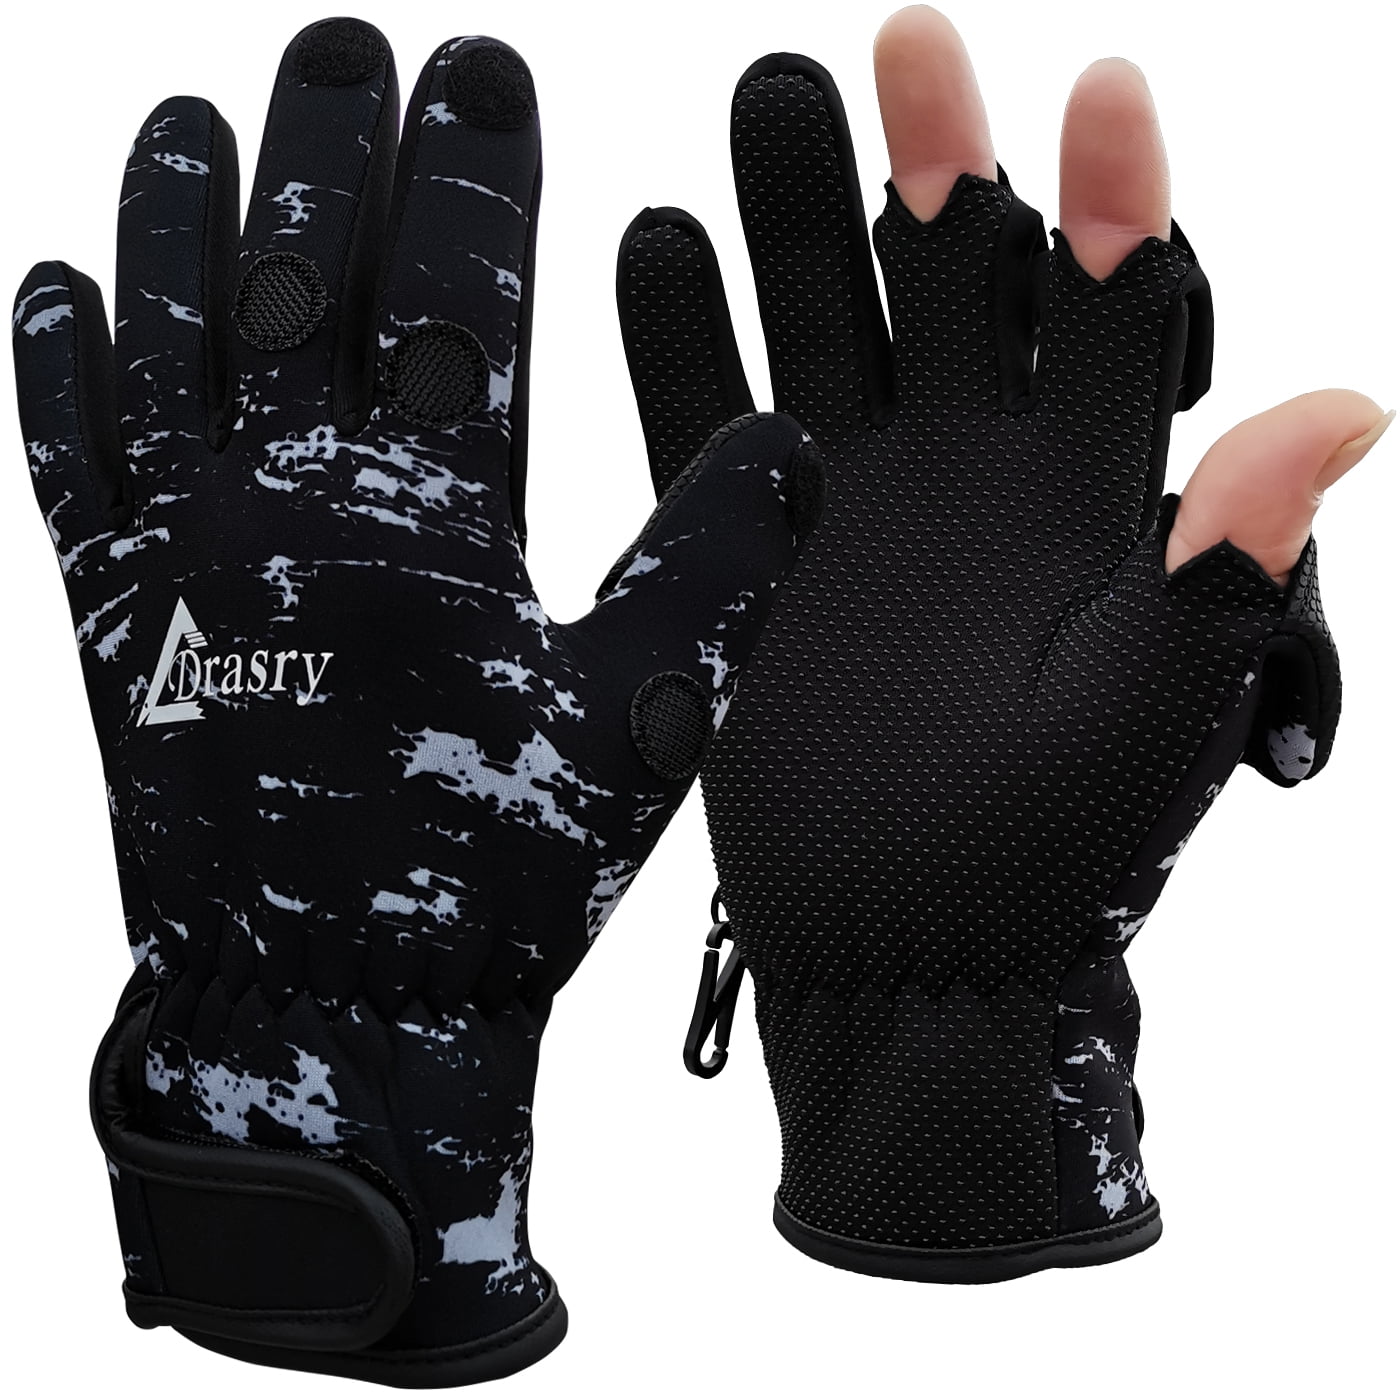 Drasry Neoprene Fishing Gloves - Waterproof, Warm, UK